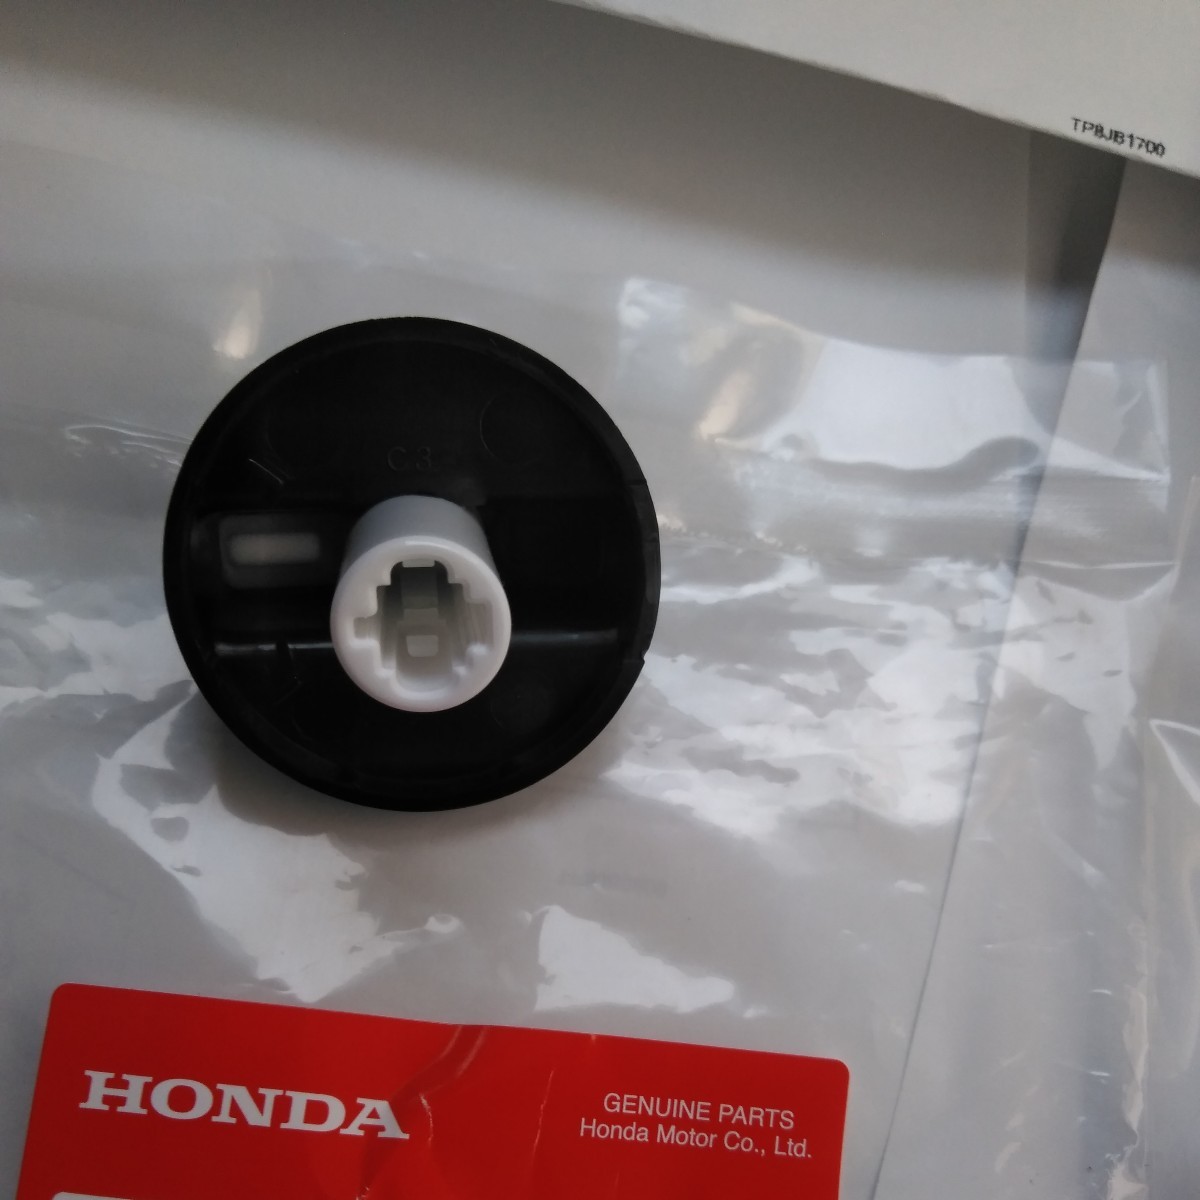  последний быстрое решение включая доставку не использовался товар Honda Acty HA7 обогреватель ручка настройки три шт. комплект оригинальный товар номер 79580-TP8-003ZA